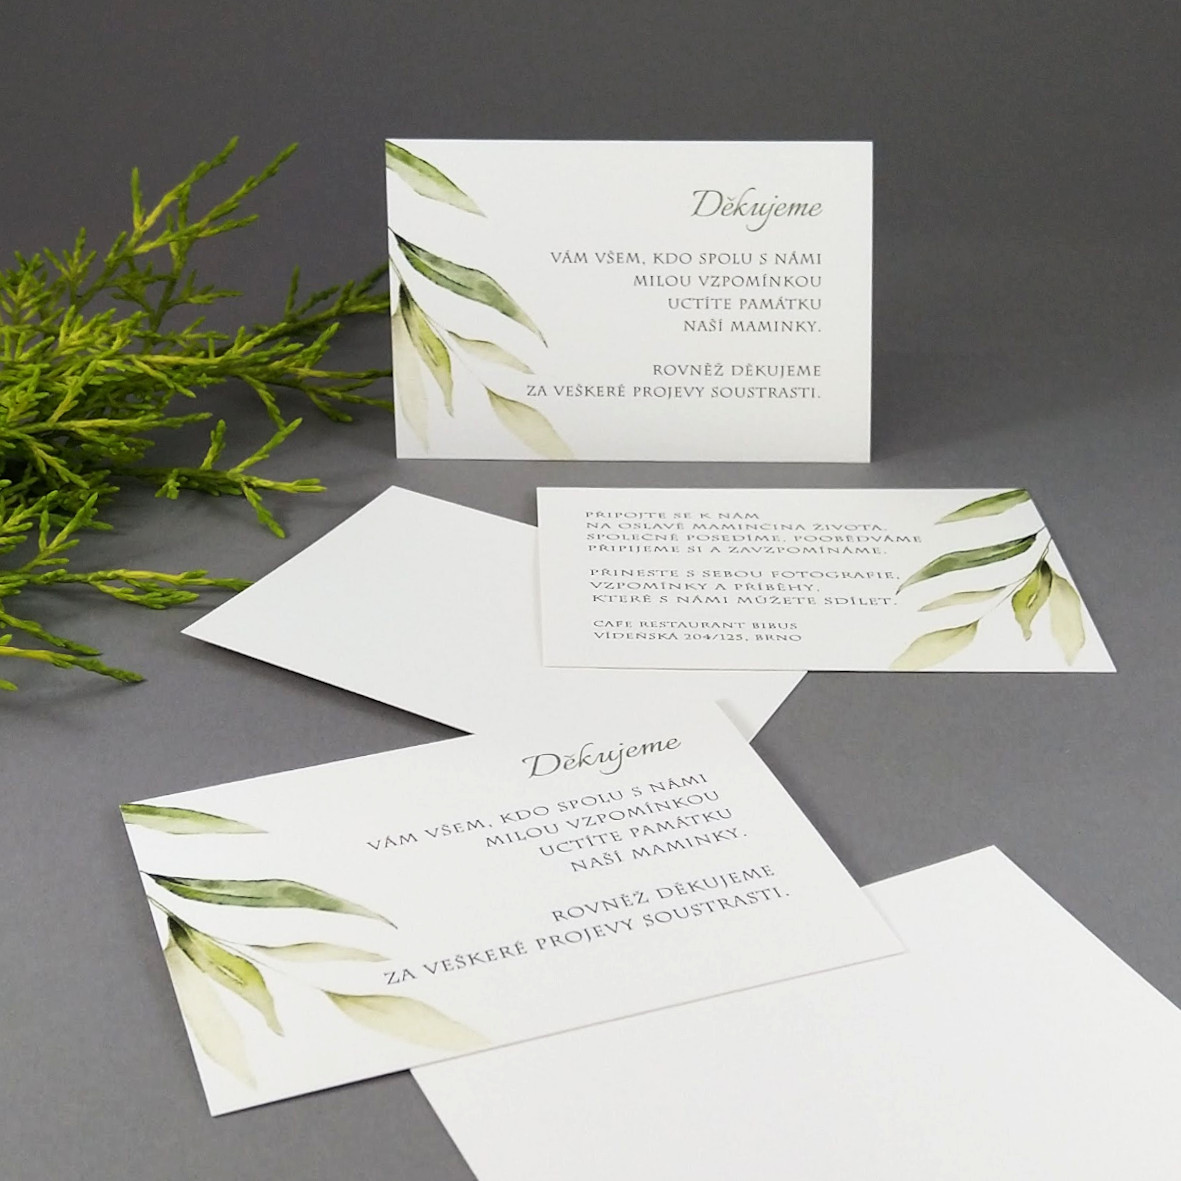 Pozvánka, informační karta – s motivem vrbové větvičky, formát 100 × 70 mm, jednostranná